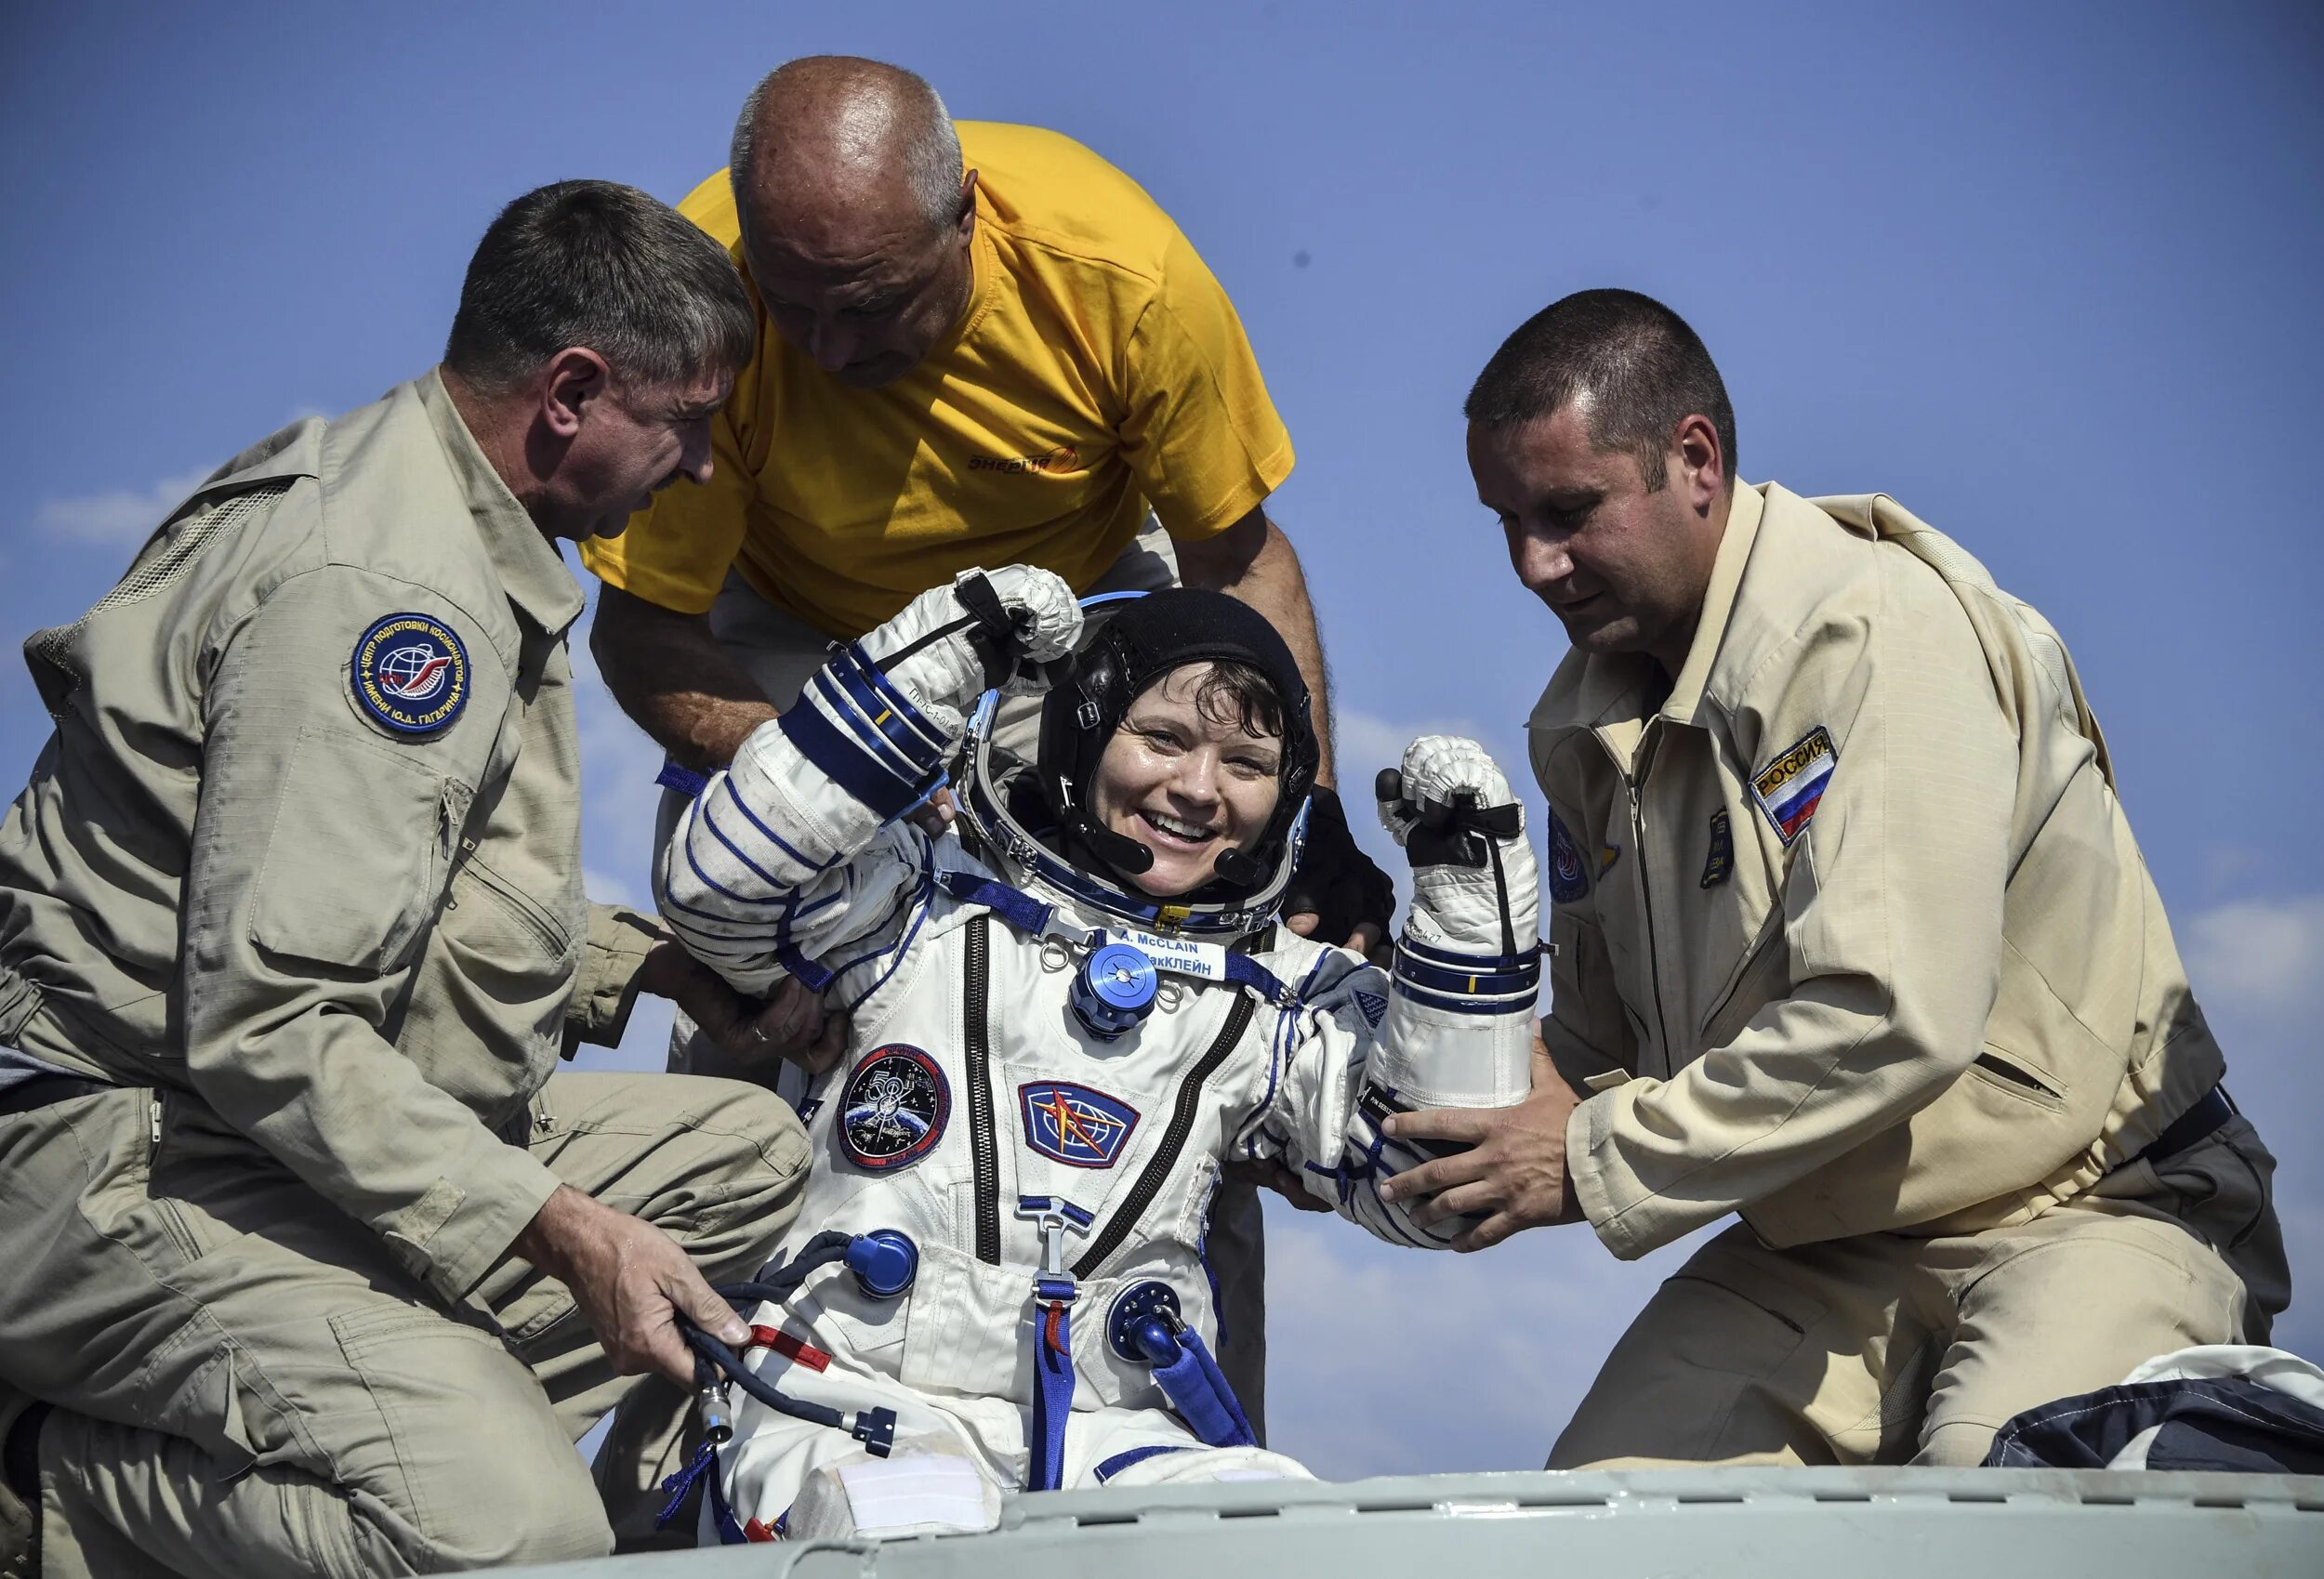 Первый американский космический полет. Энн МАККЛЕЙН астронавт. Космонавтика США. Астронавты NASA. Космонавт USA.